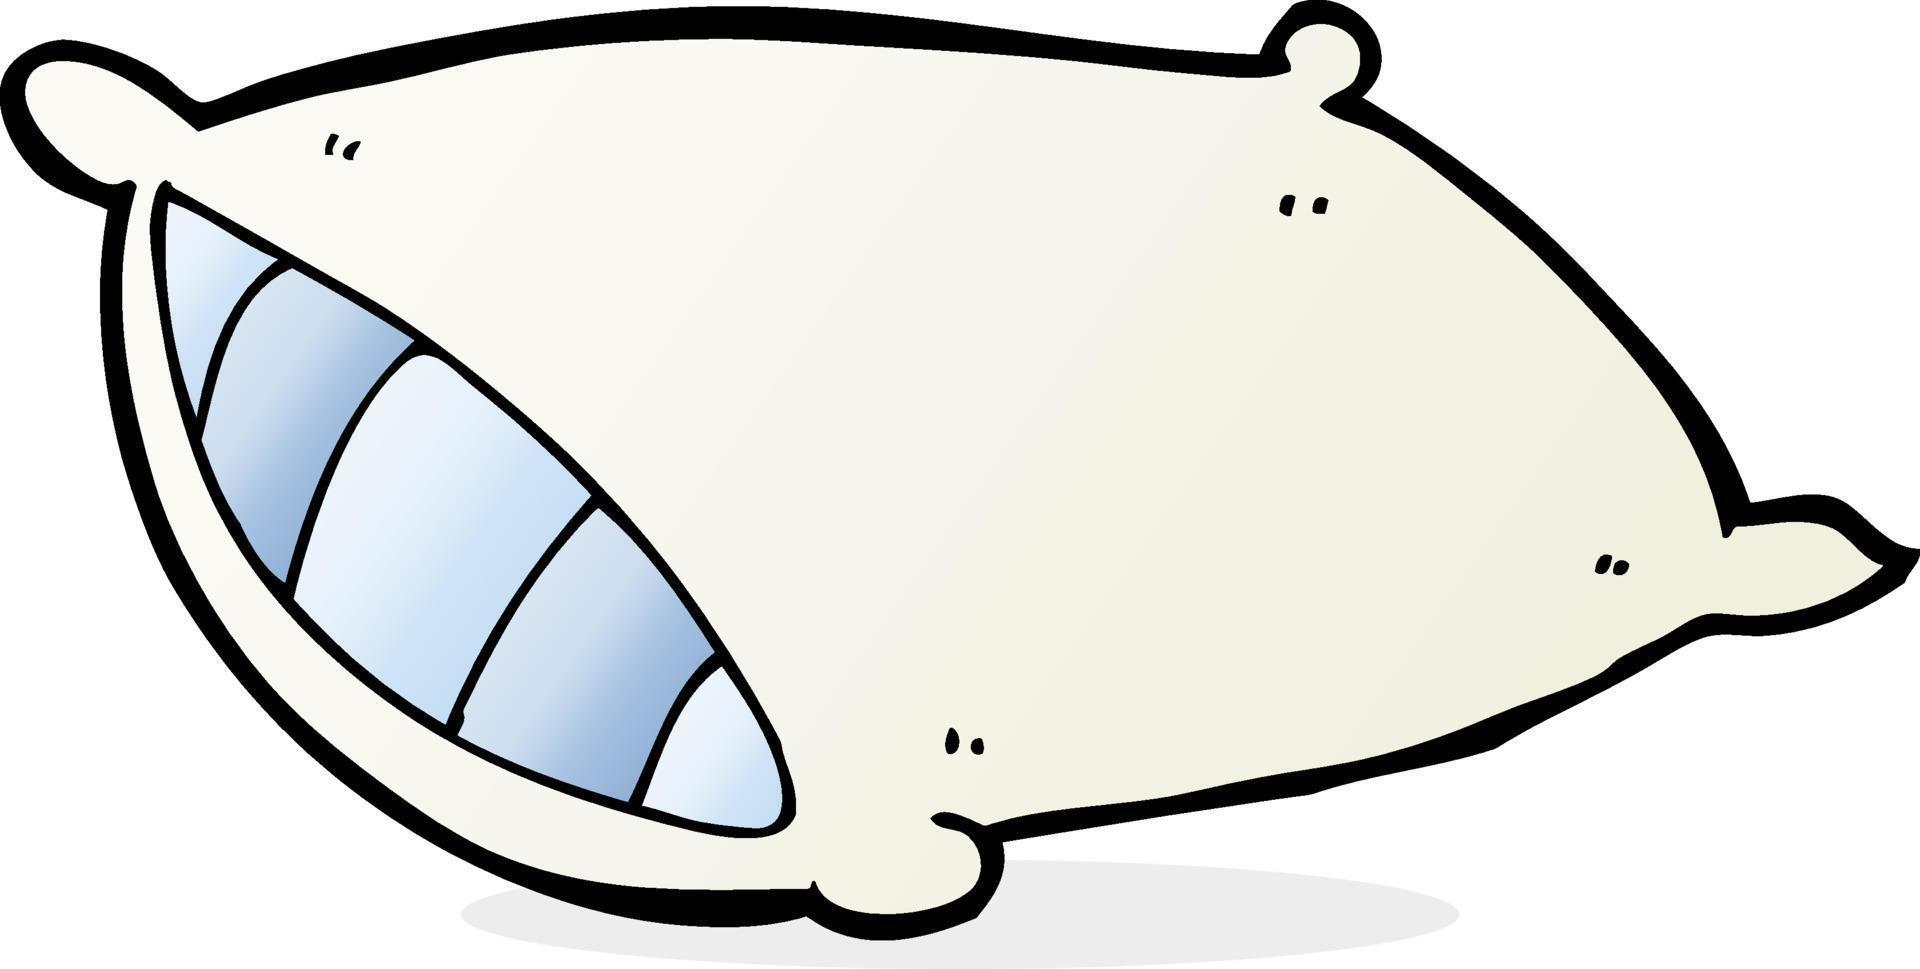 doodle cartoon pillow vector